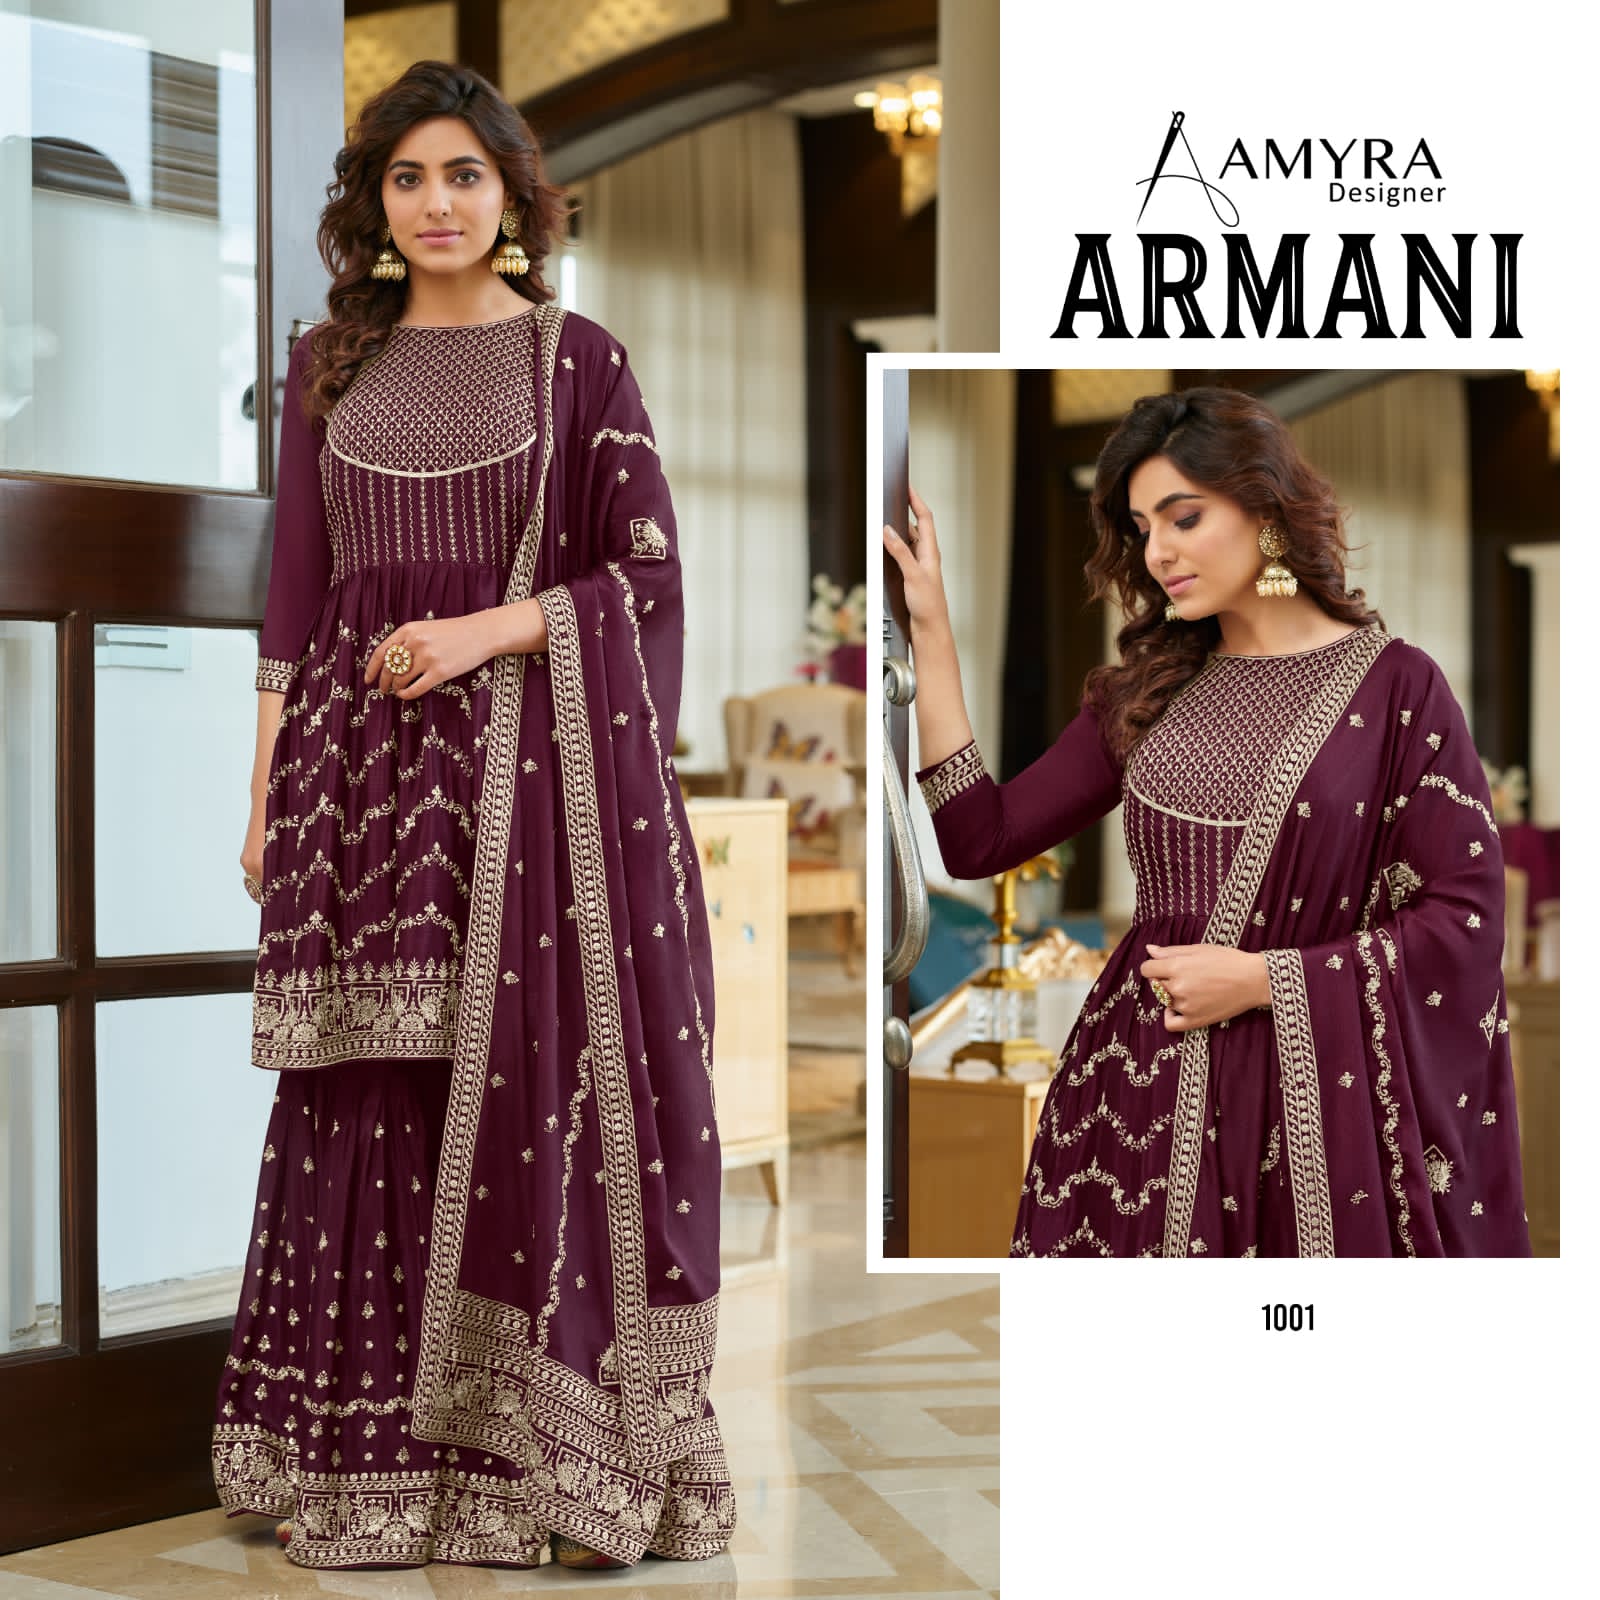 Amyra Armani collection 5